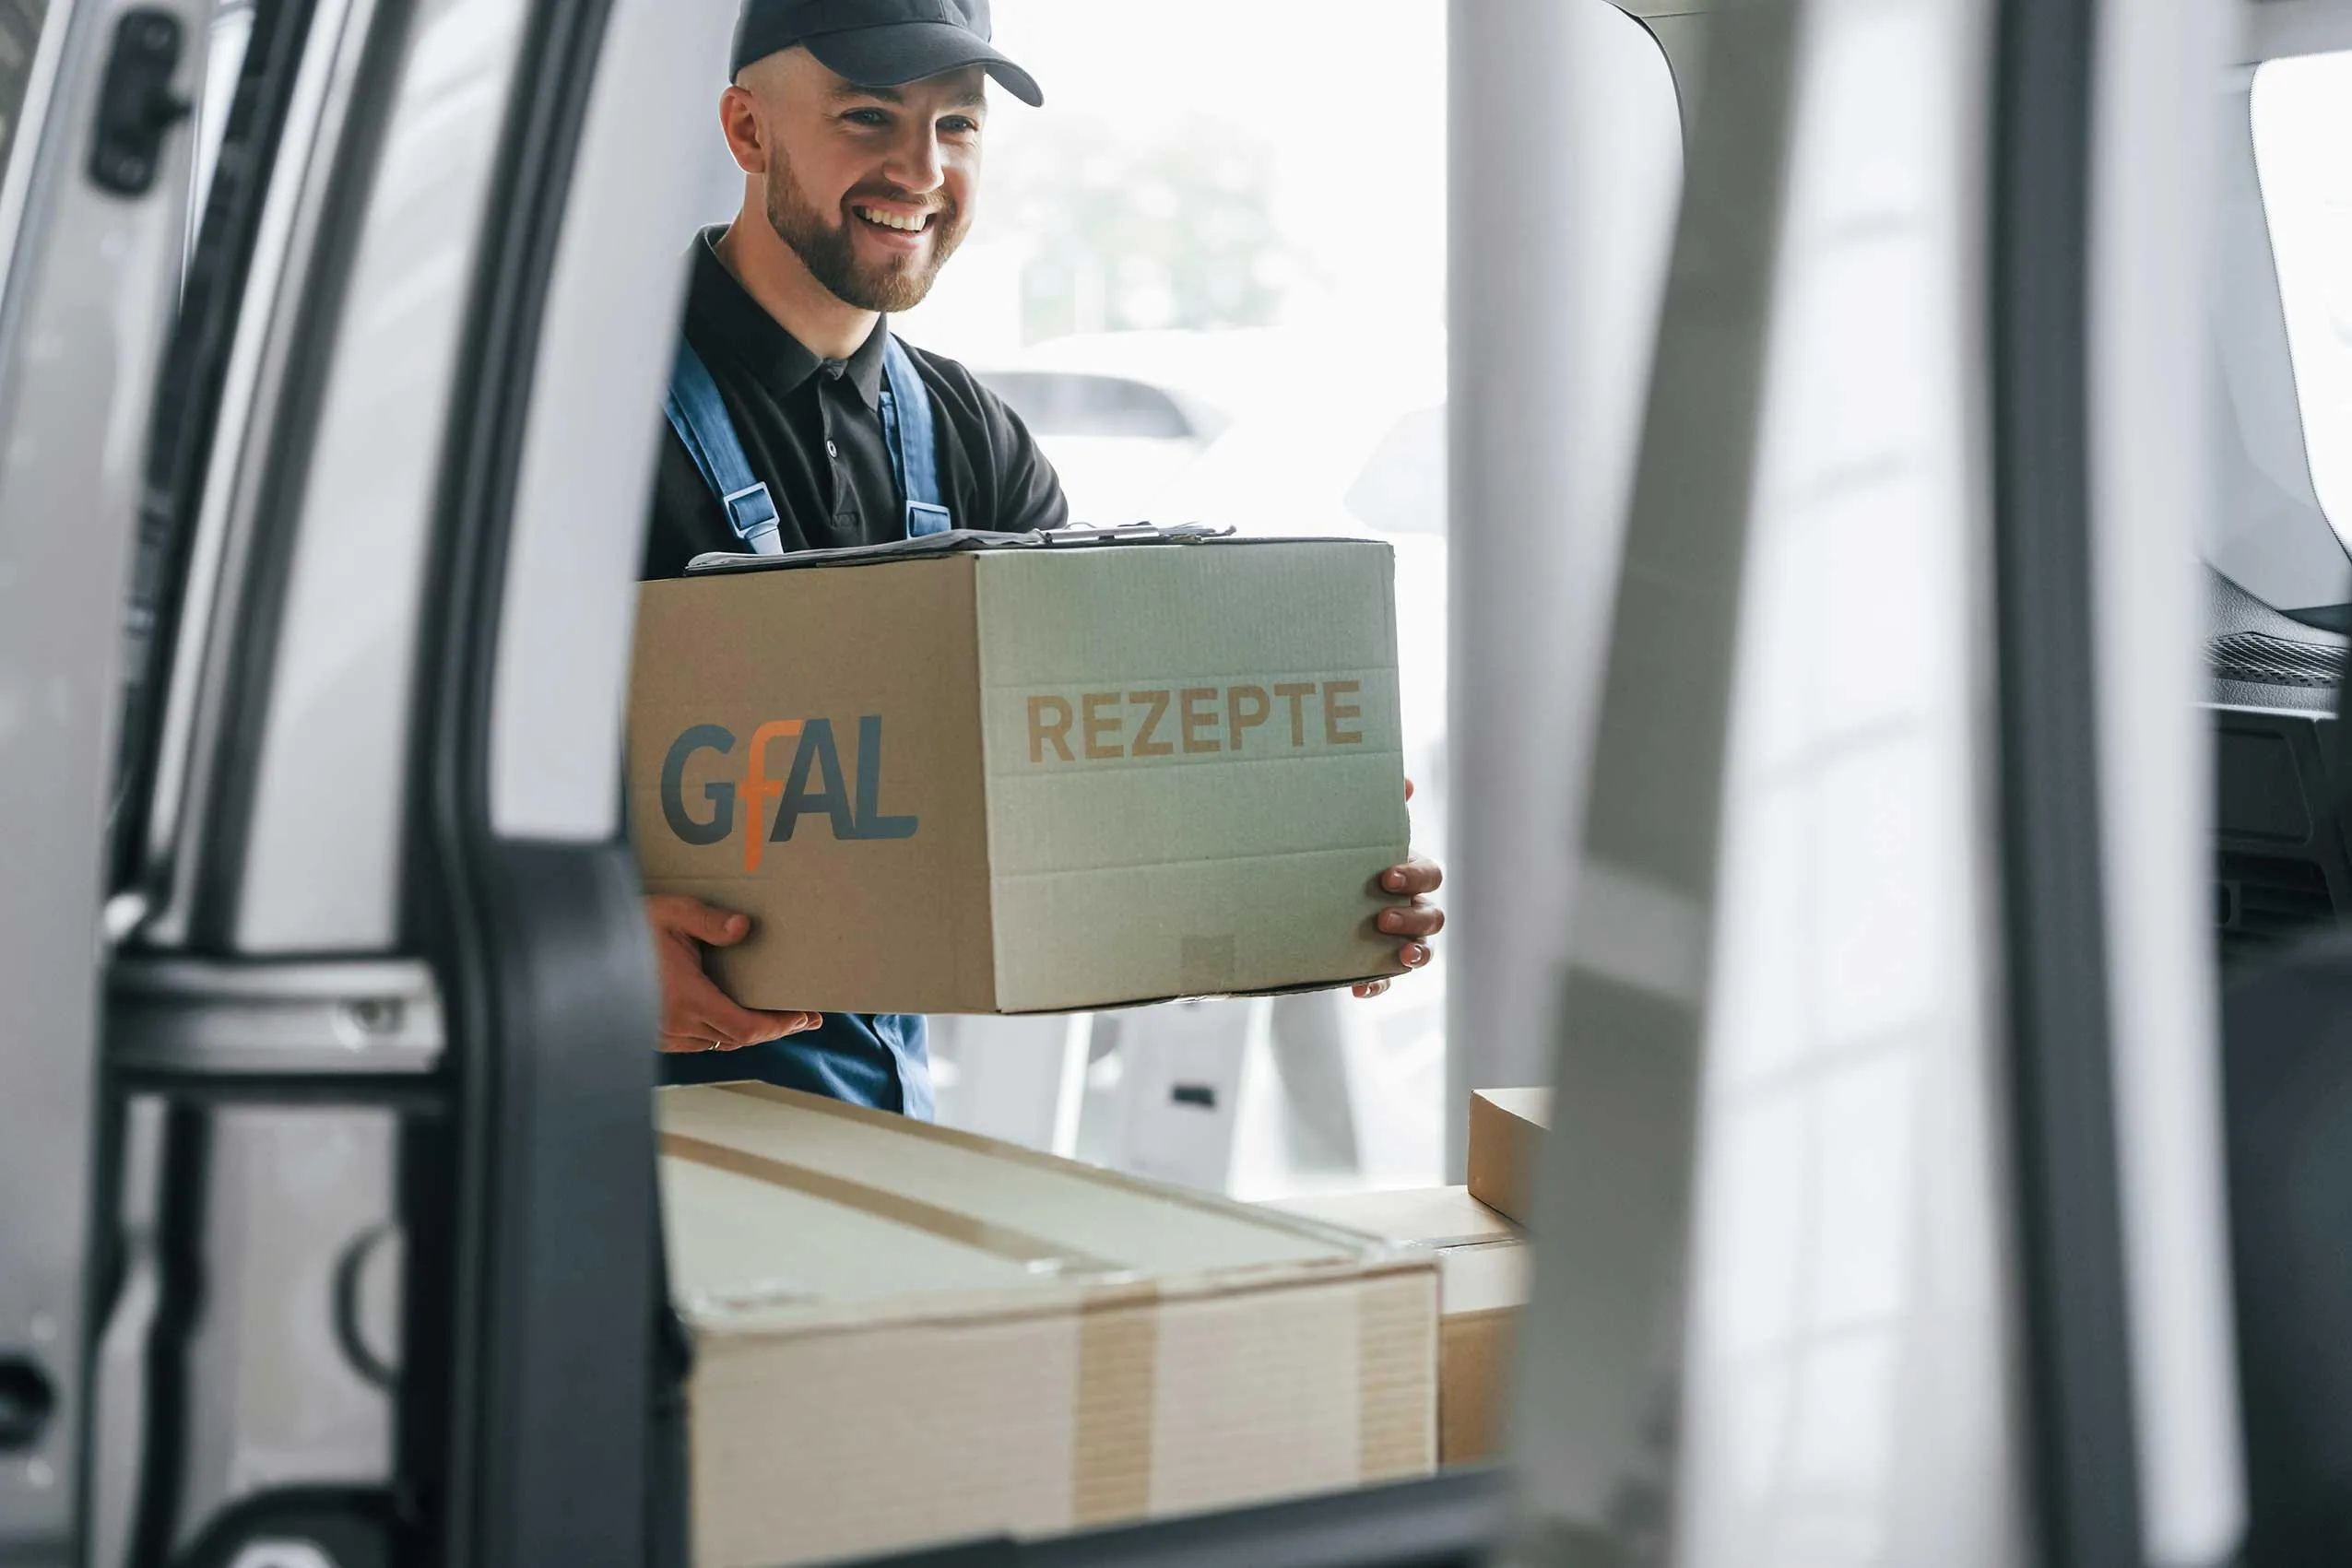 Ein Postbote holt ein Packet mit Rezepten für die GfAl aus ein Lieferwagen